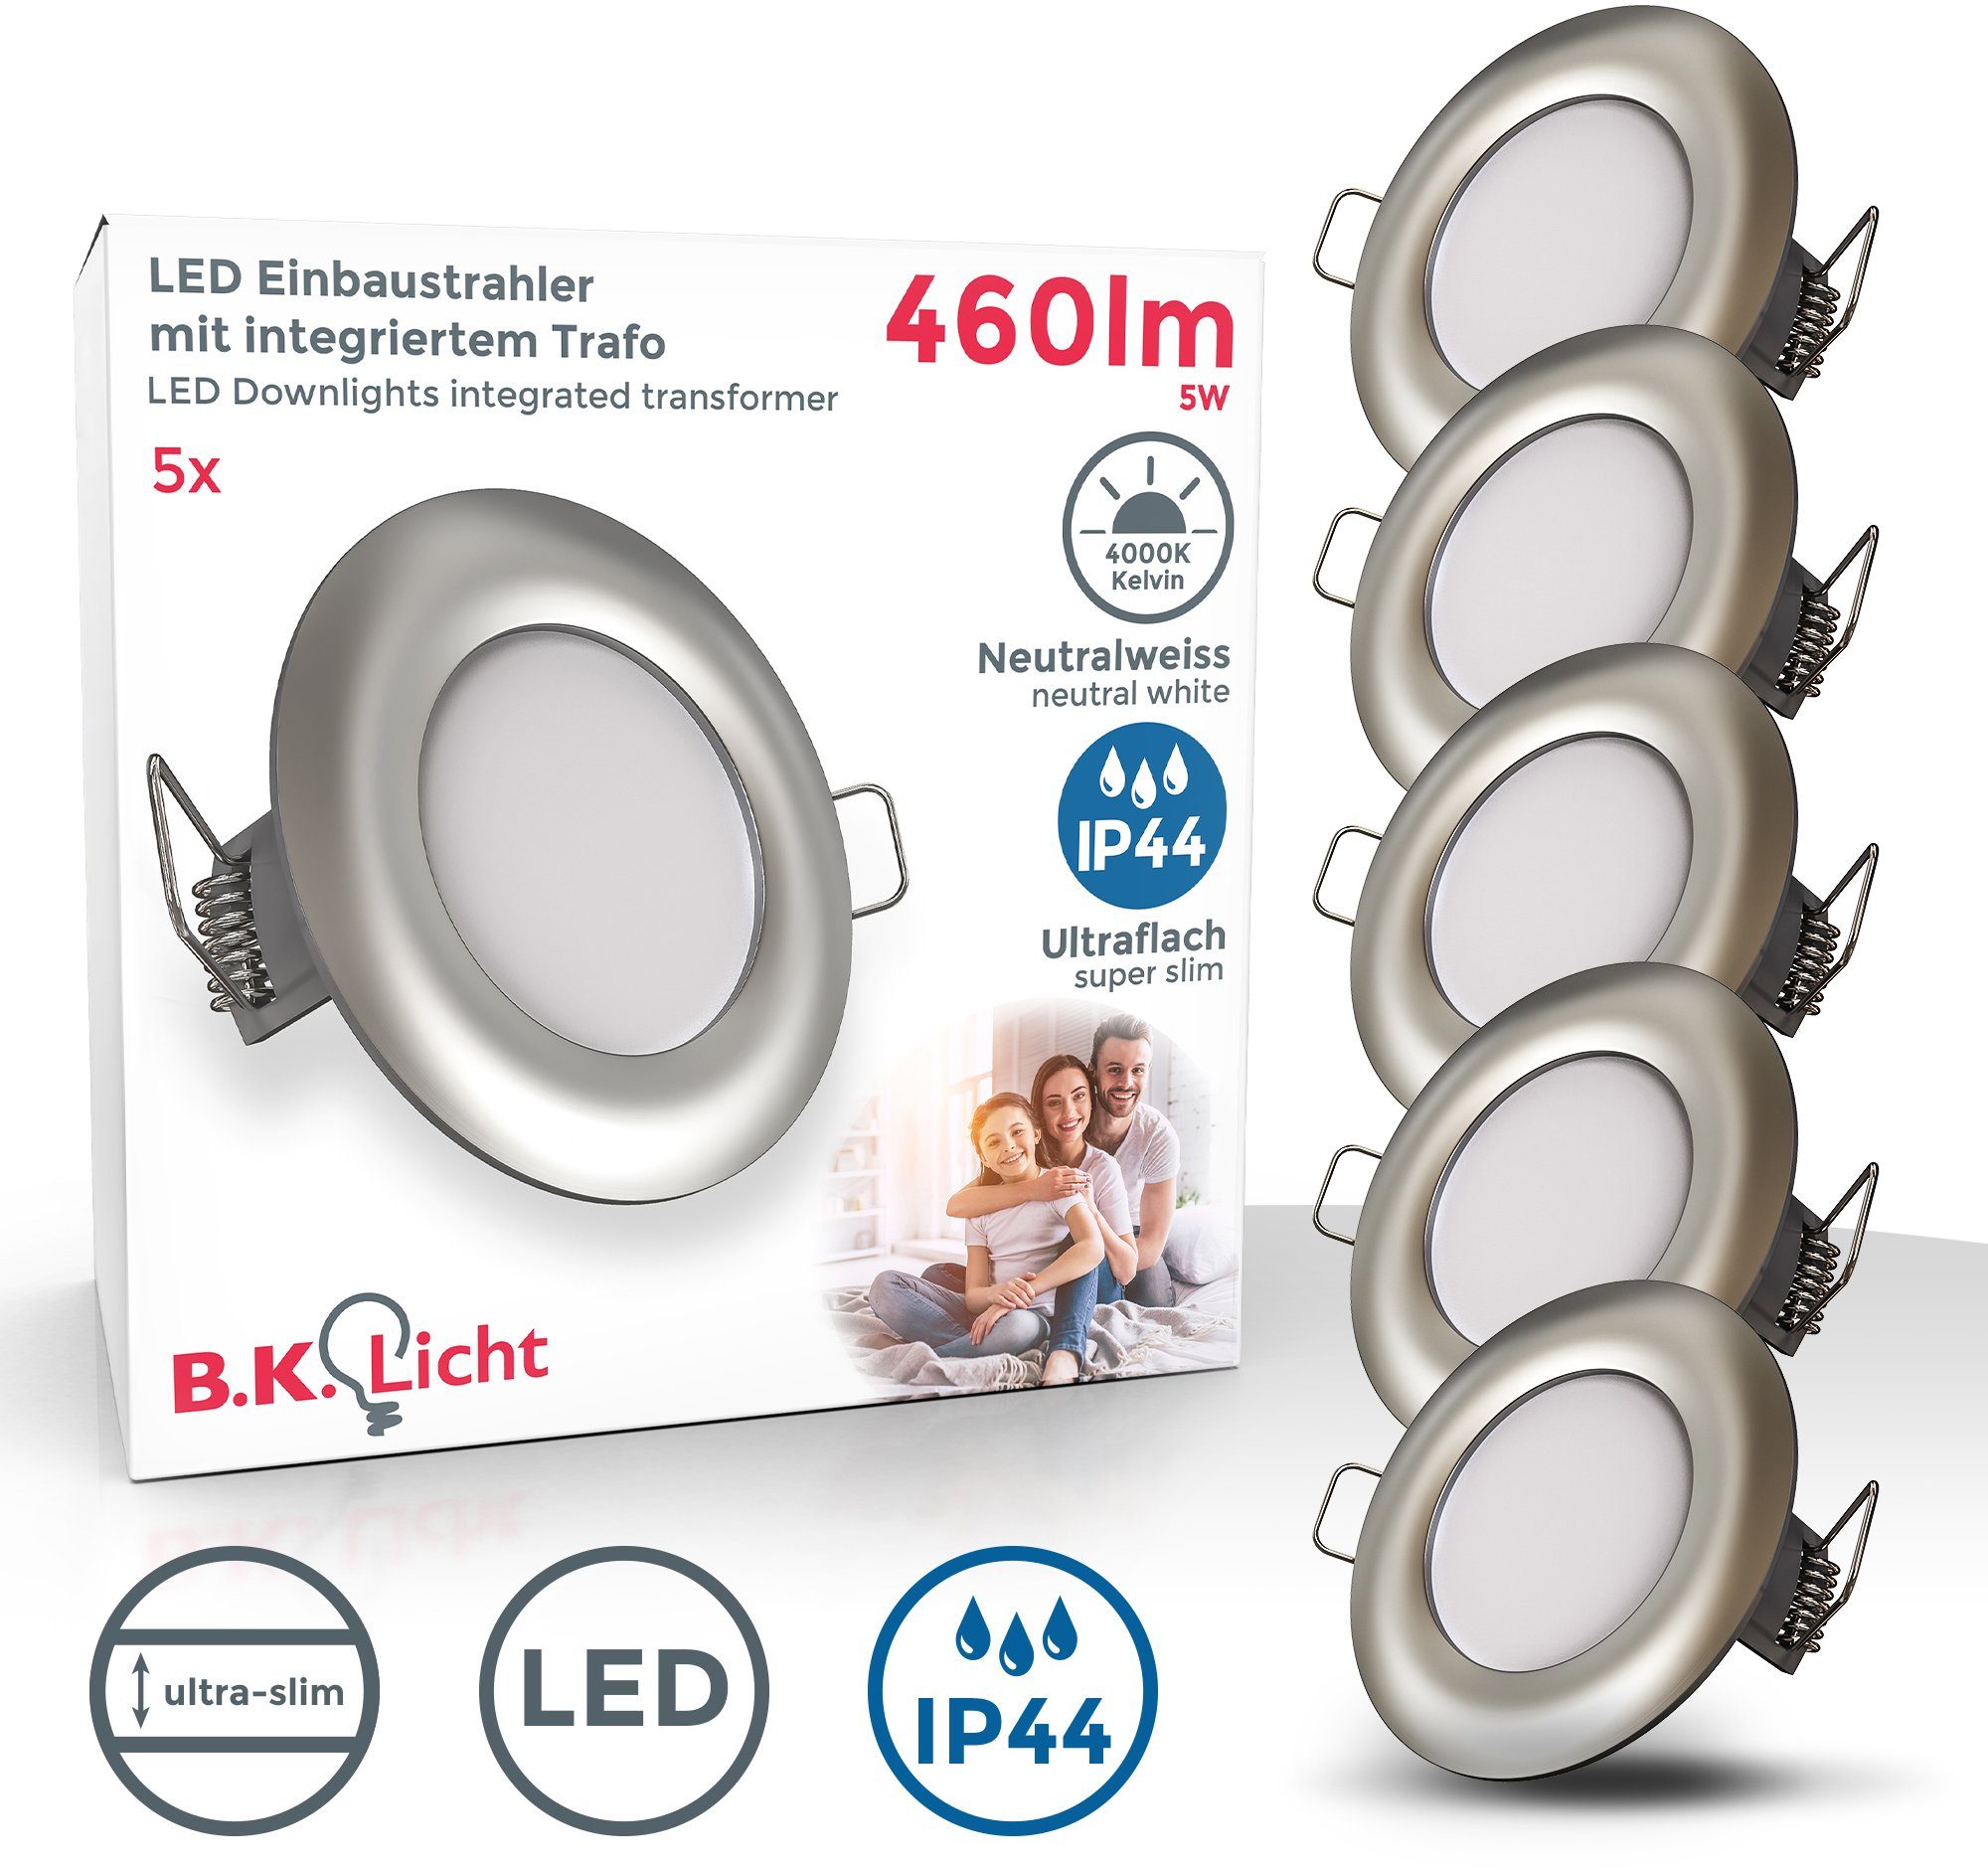 B.K.Licht LED Einbauleuchte, LED fest Badezimmer 4000K, matt-nickel, Schutzklasse 5x 5W für Neutralweiß, IP44, 460lm Durch ideal ultra-flach, IP44 Einbaustrahler, integriert